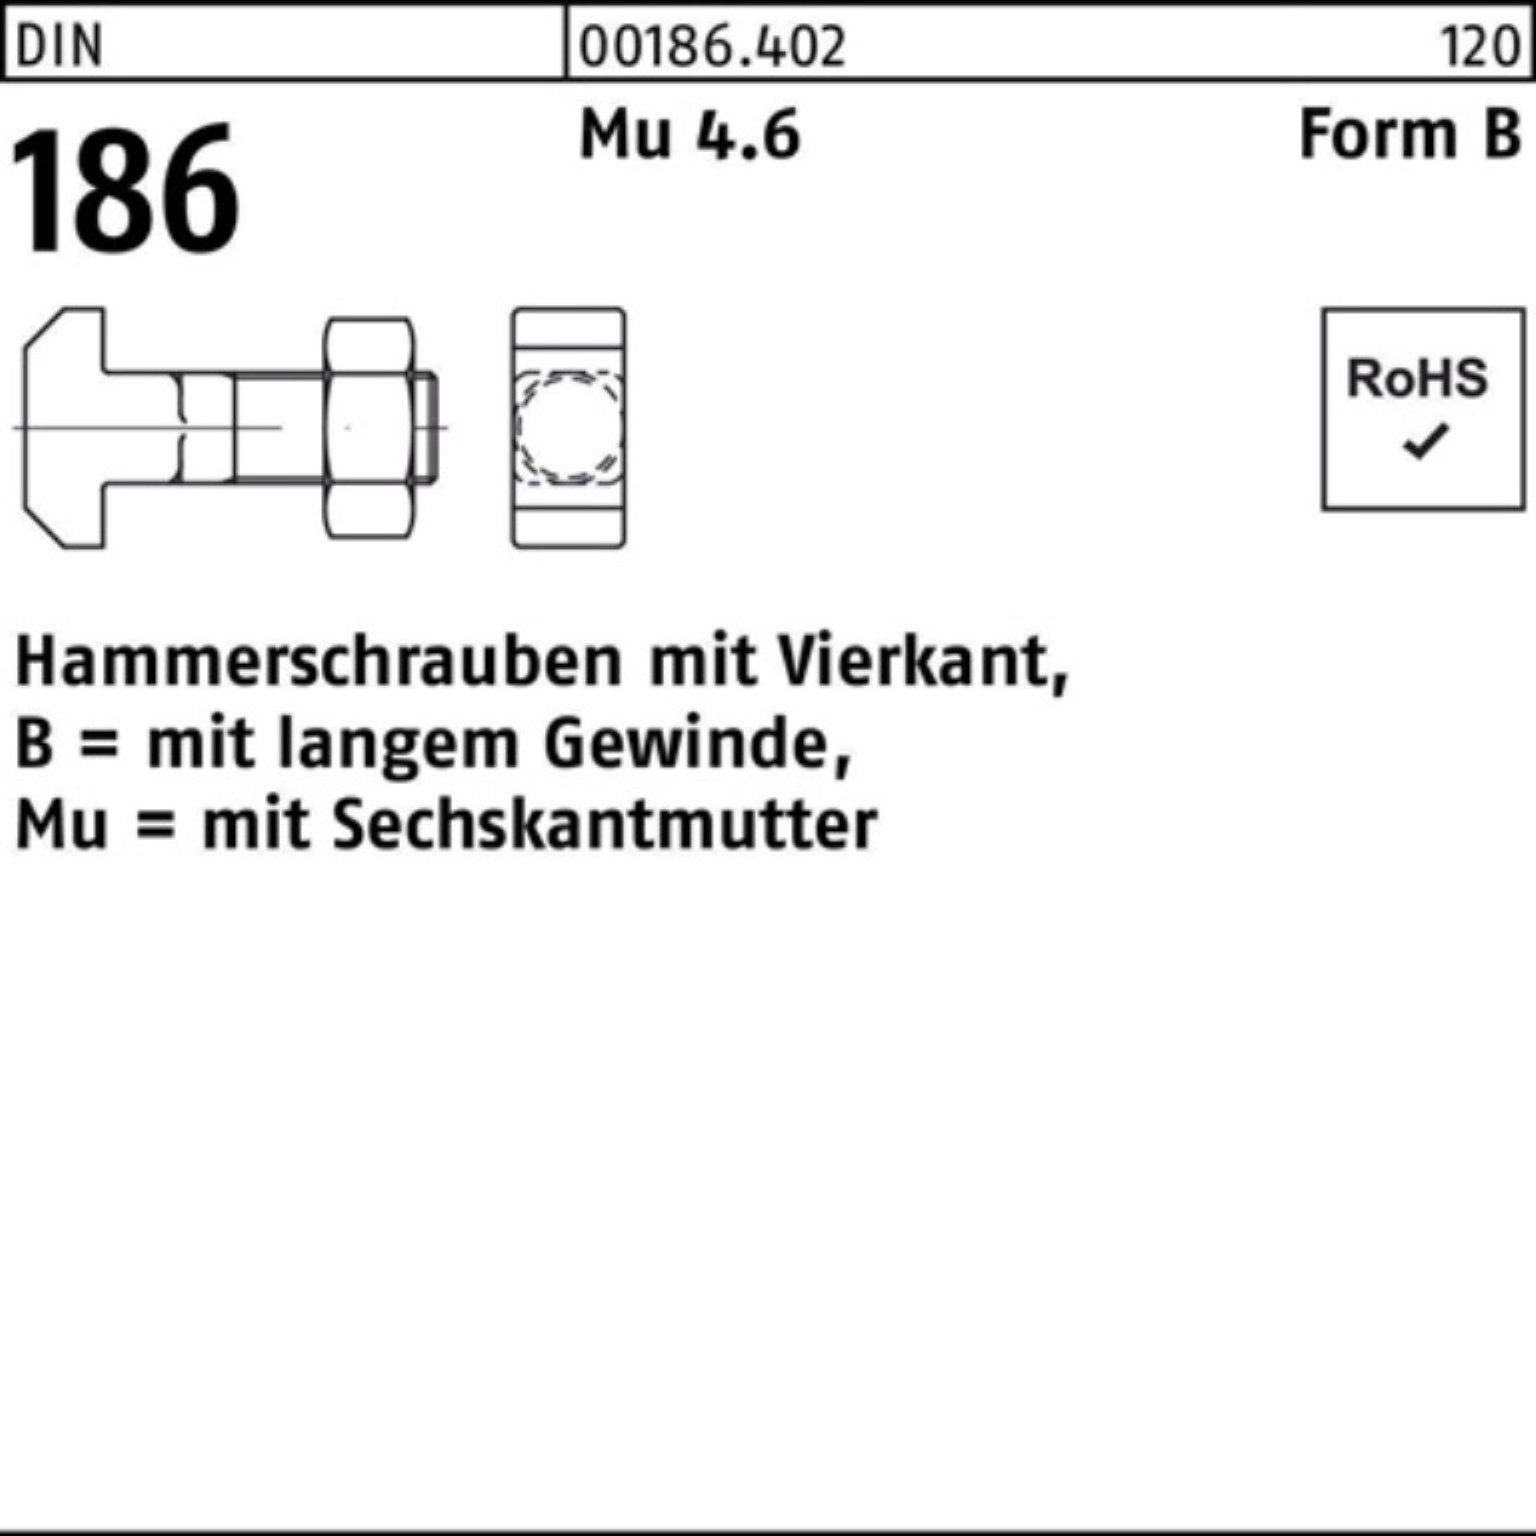 Reyher Schraube 100er Pack Hammerschraube 6-ktmutter Vierkant 12x 186 110 DIN FormB BM